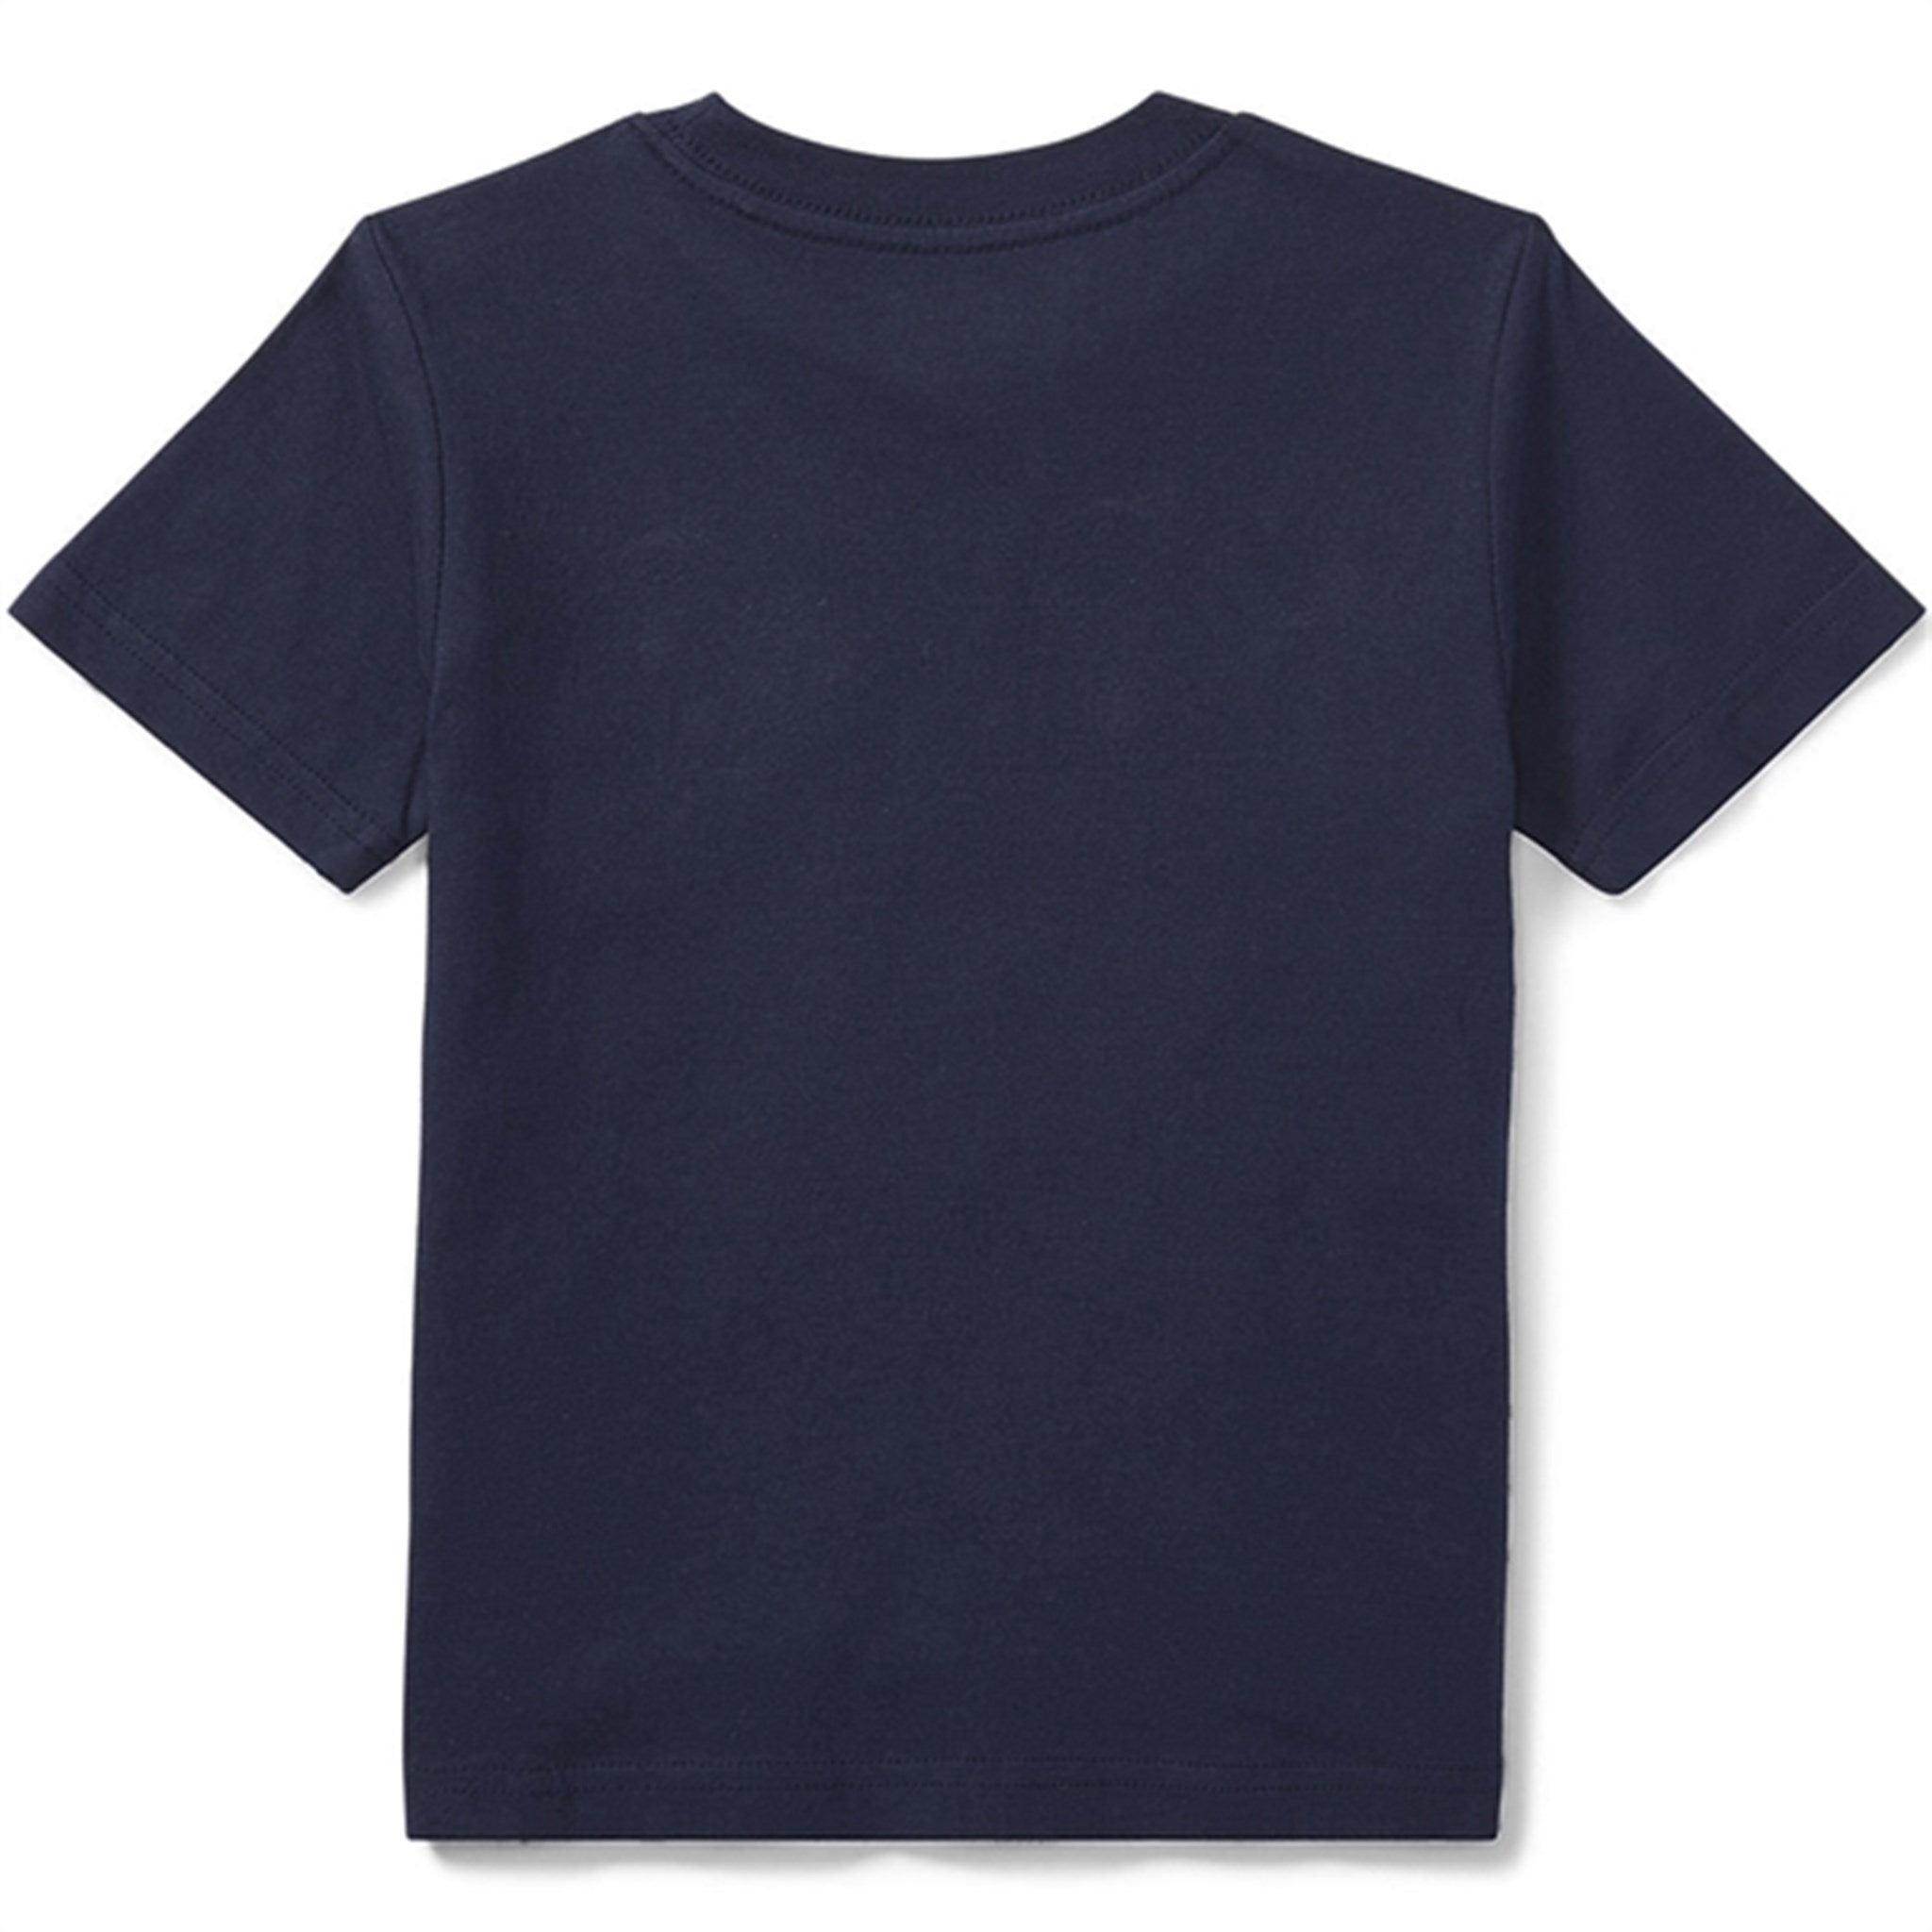 Polo Ralph Lauren Boy Short Sleeved T-shirt Cruise Navy 2